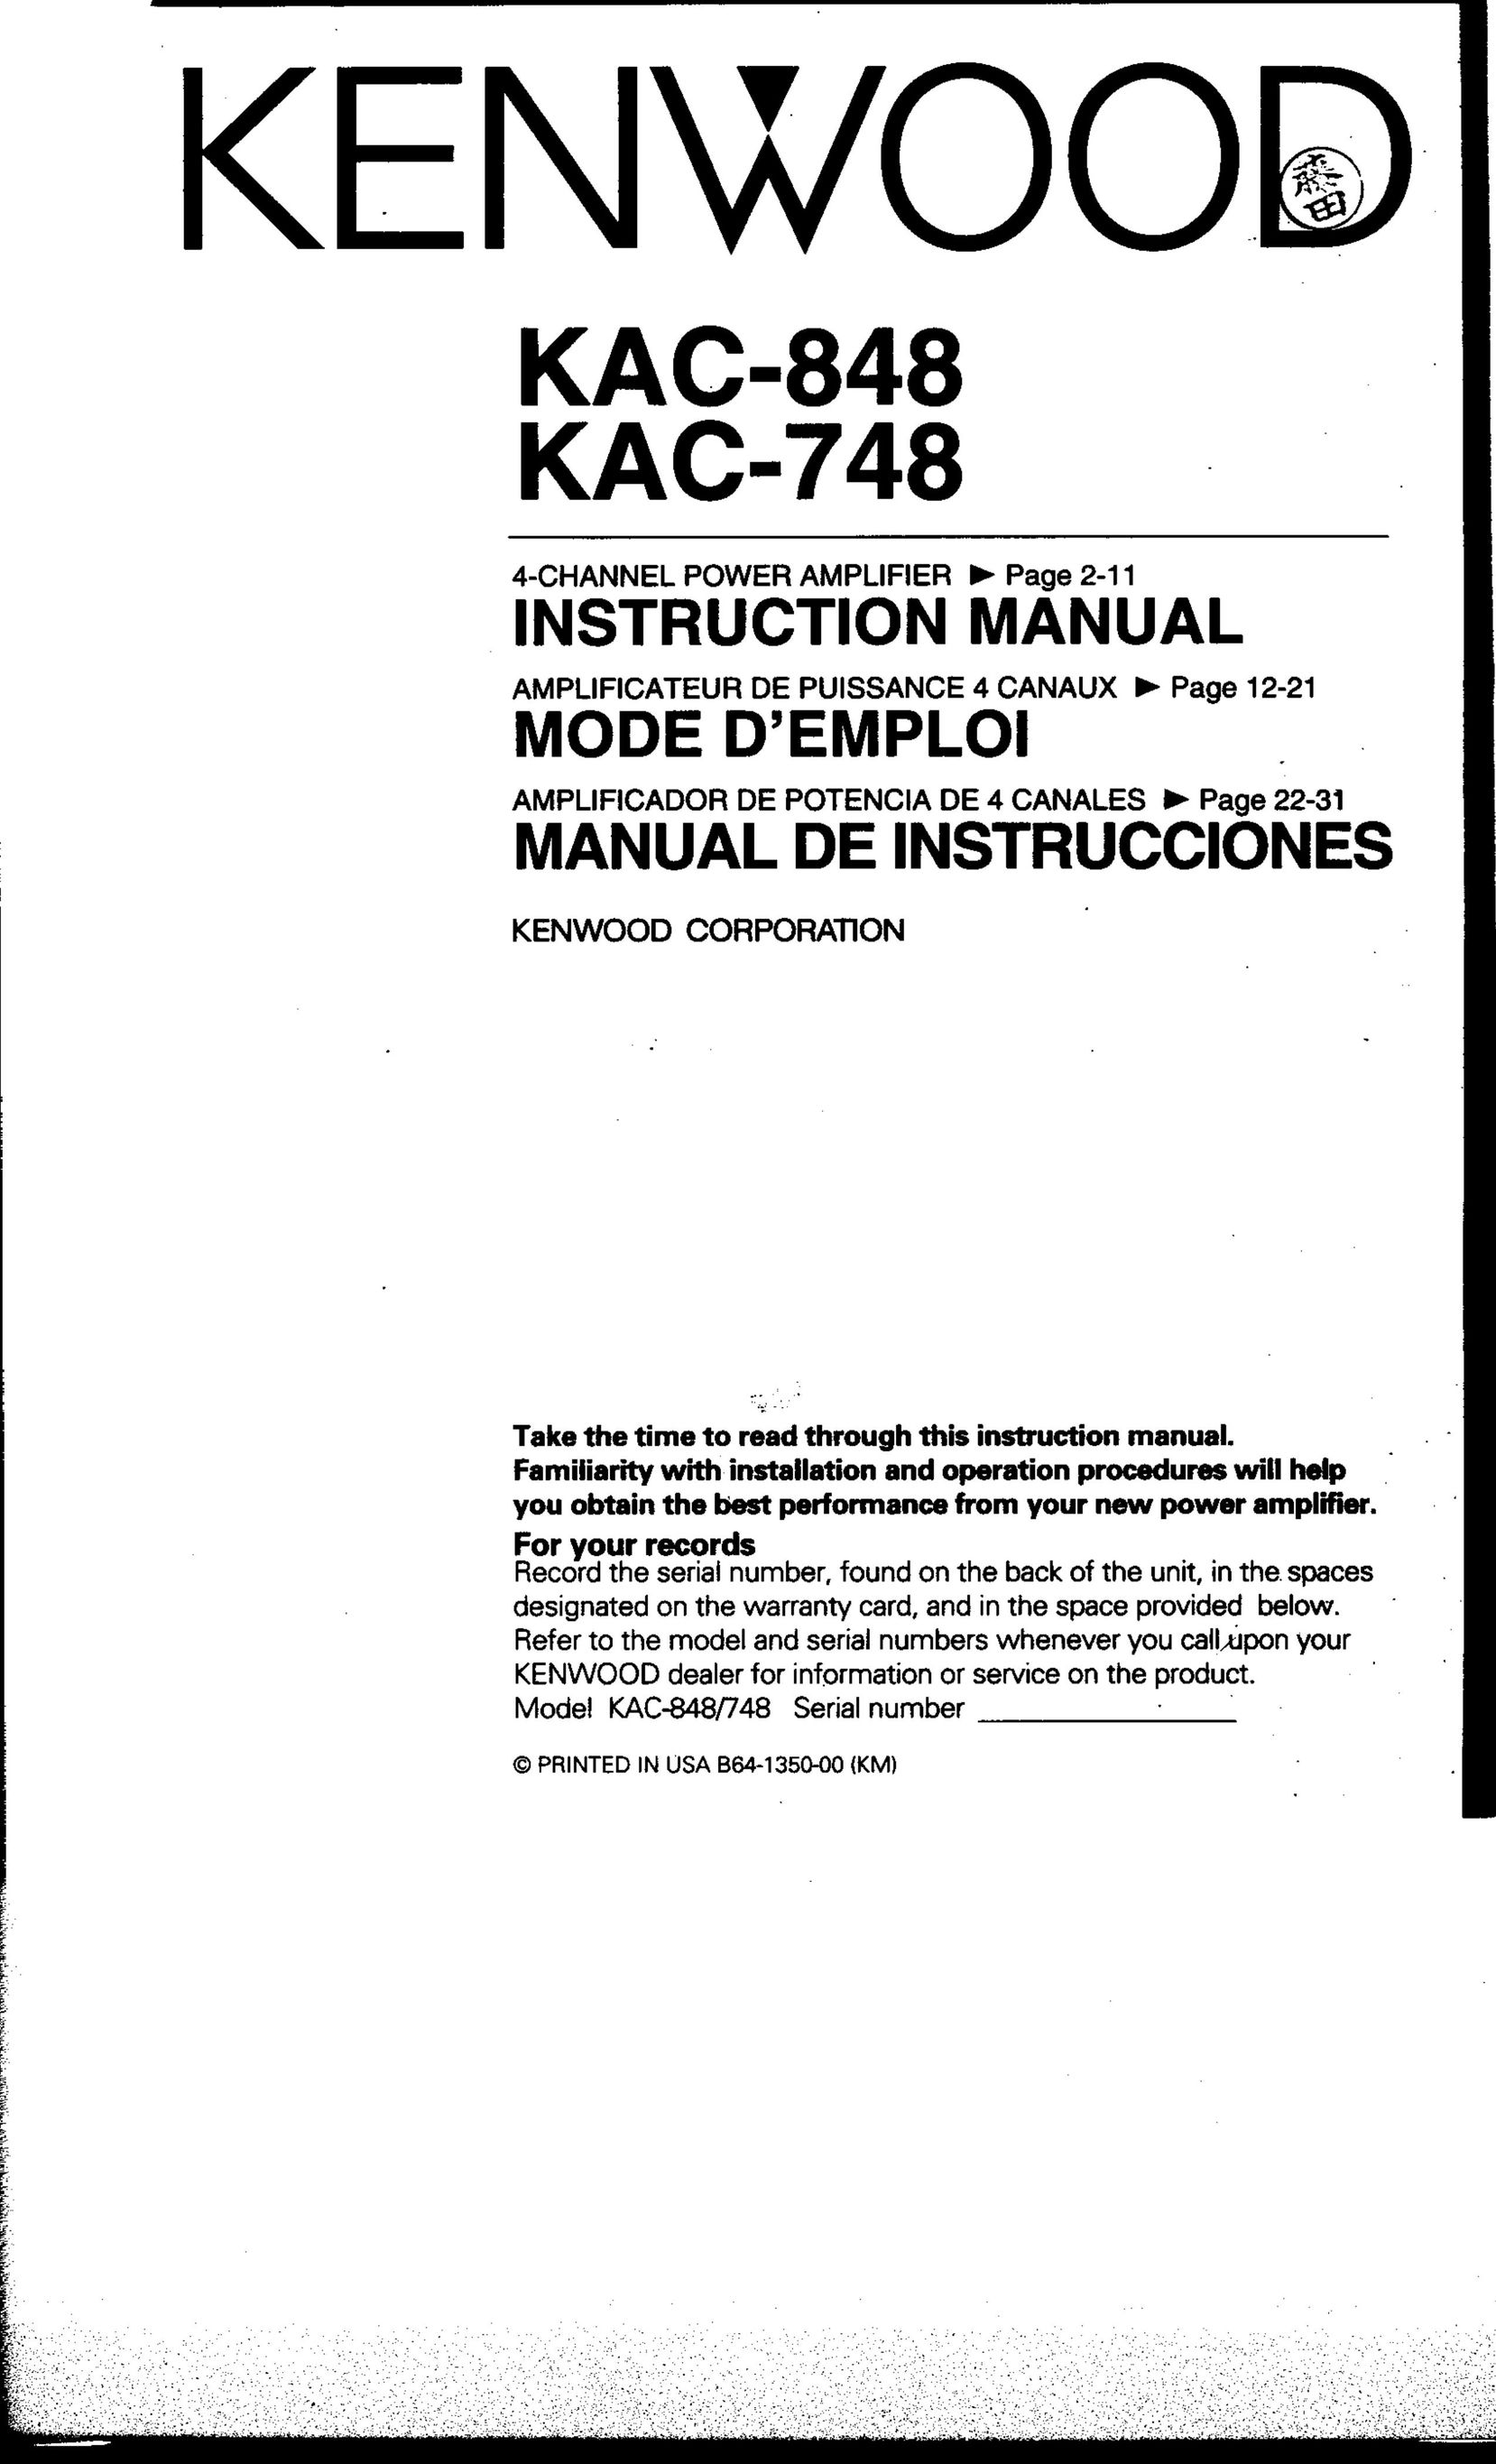 Kenwood KAC-748 Stereo Amplifier User Manual